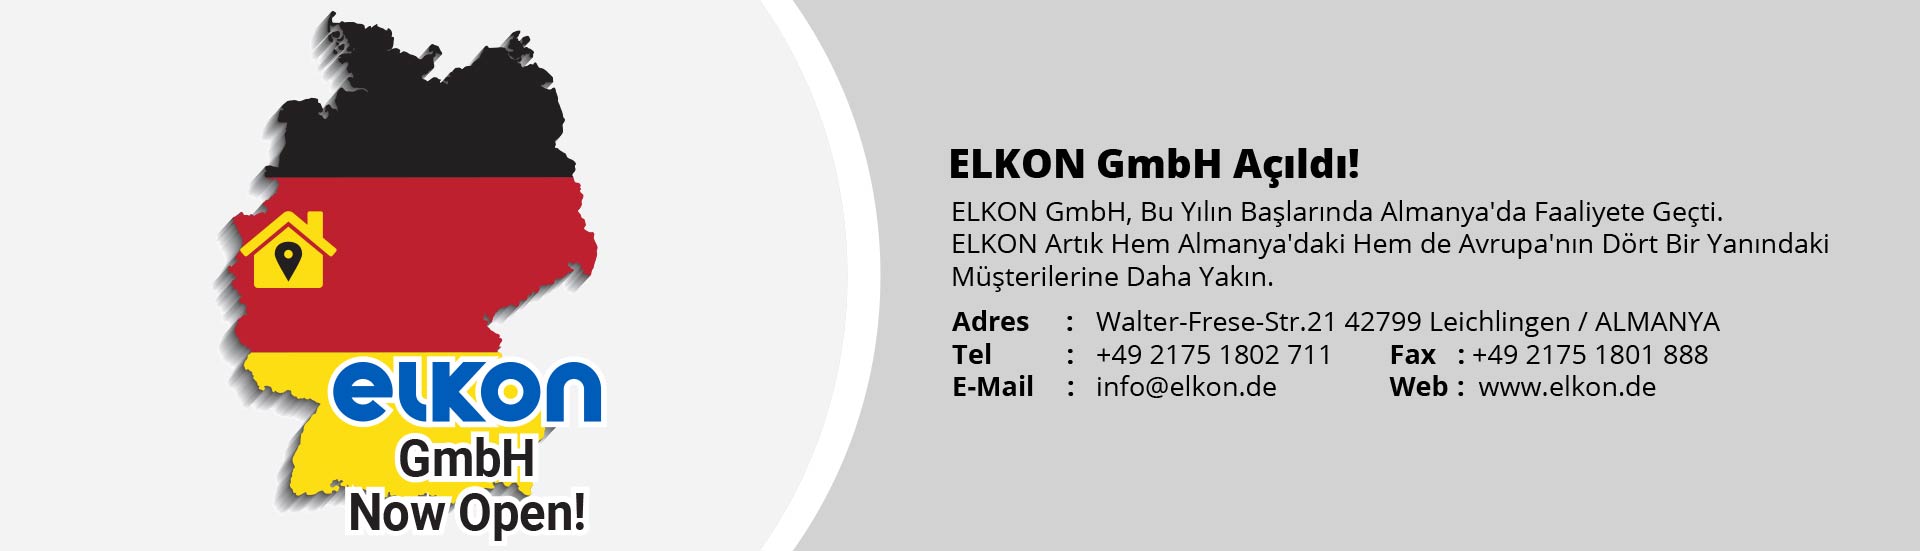 ELKON GmbH Açıldı!